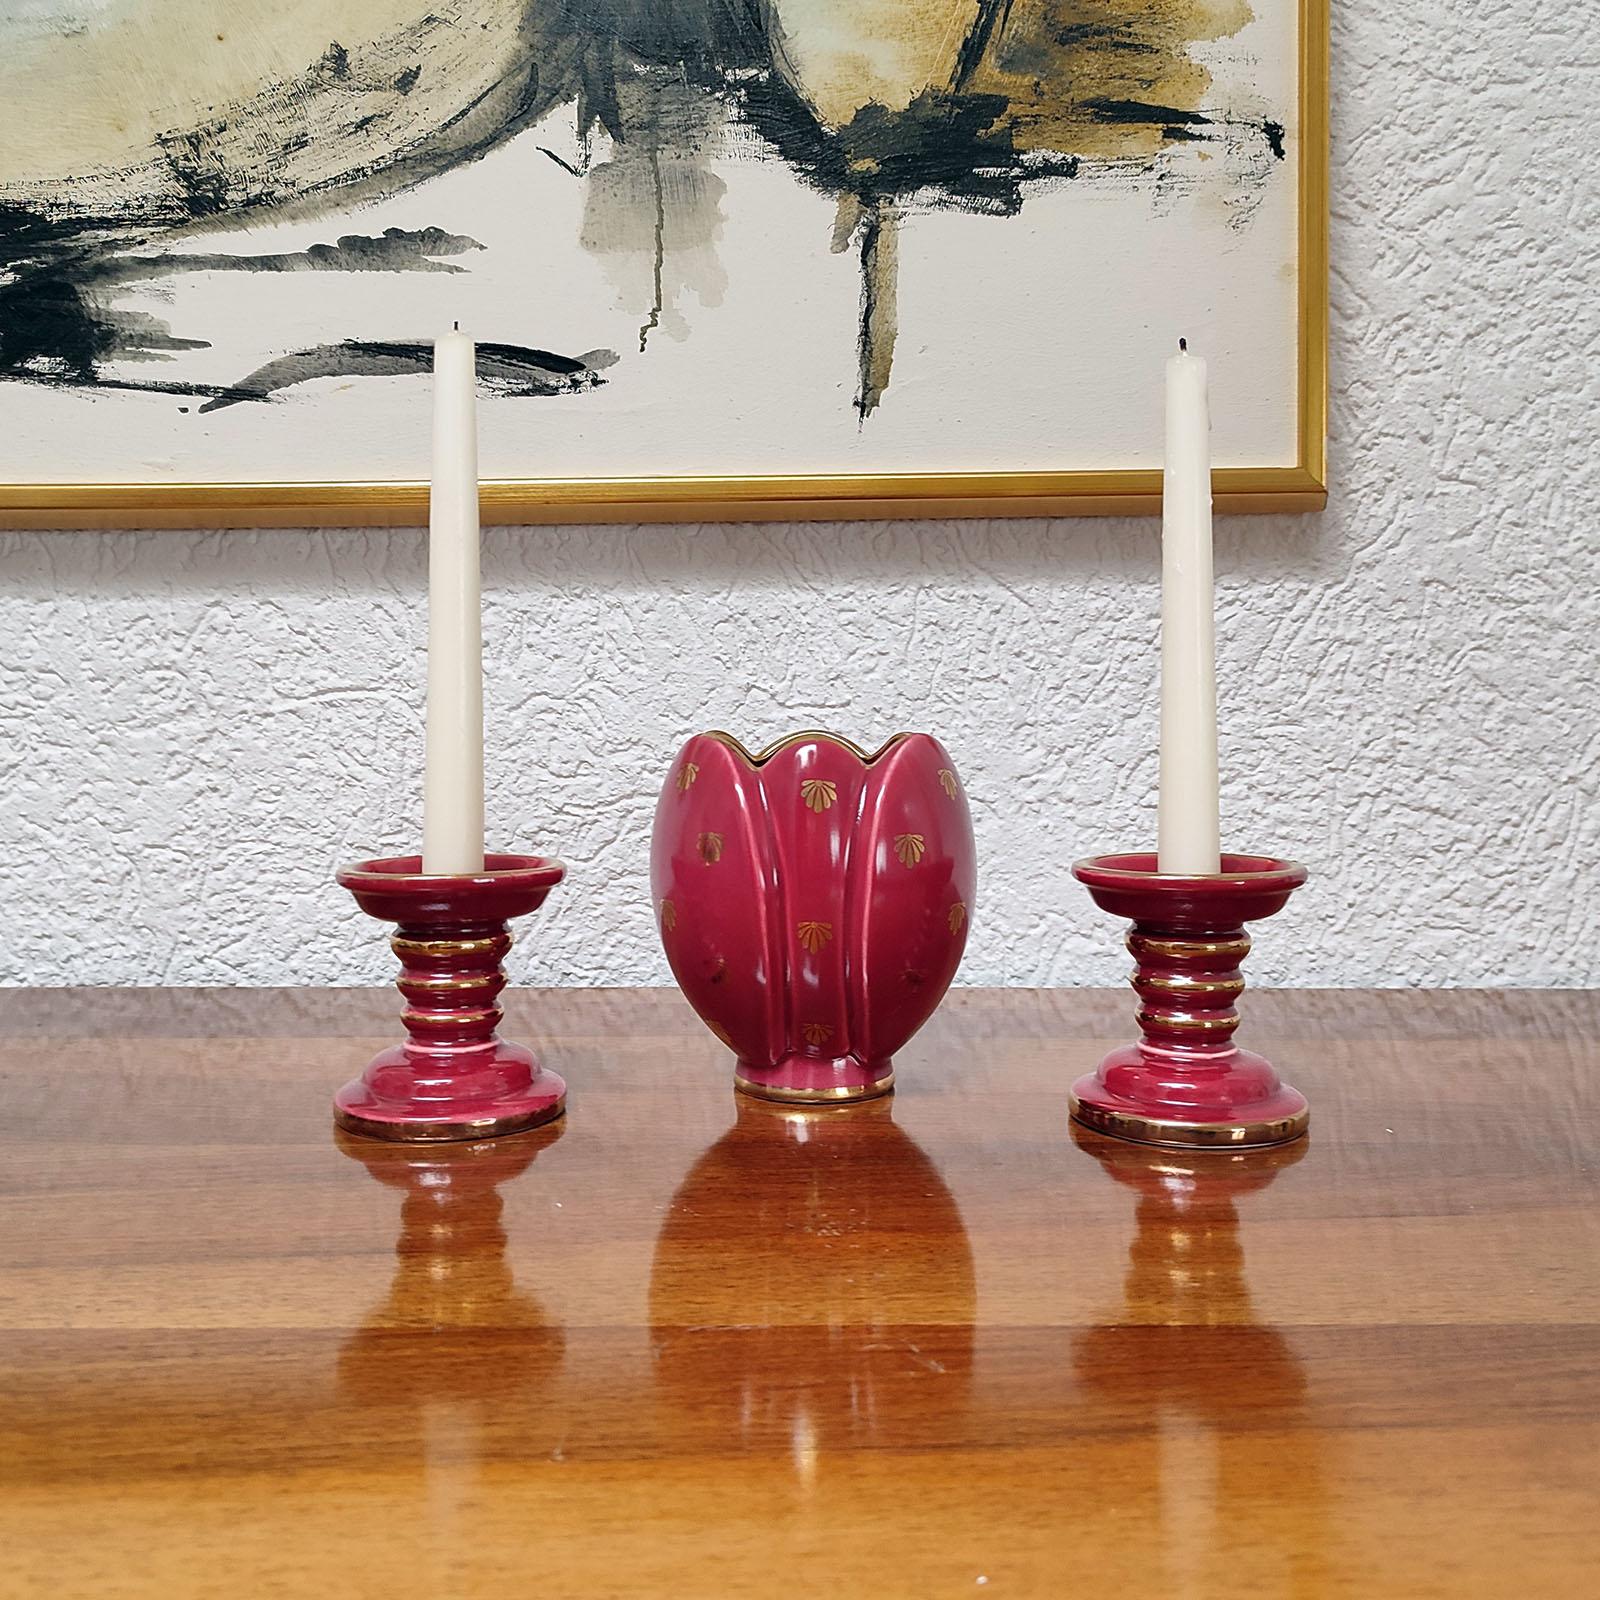 Ensemble de céramiques 'Red Rubin' à glaçure rouge, dorées, Upsala-Ekeby, Gefle. Design/One.
Composé d'un vase et d'une paire de bougeoirs. Parfait état. Chacune porte la marque du fabricant en bas. Vase avec étiquette d'origine décolorée sur le